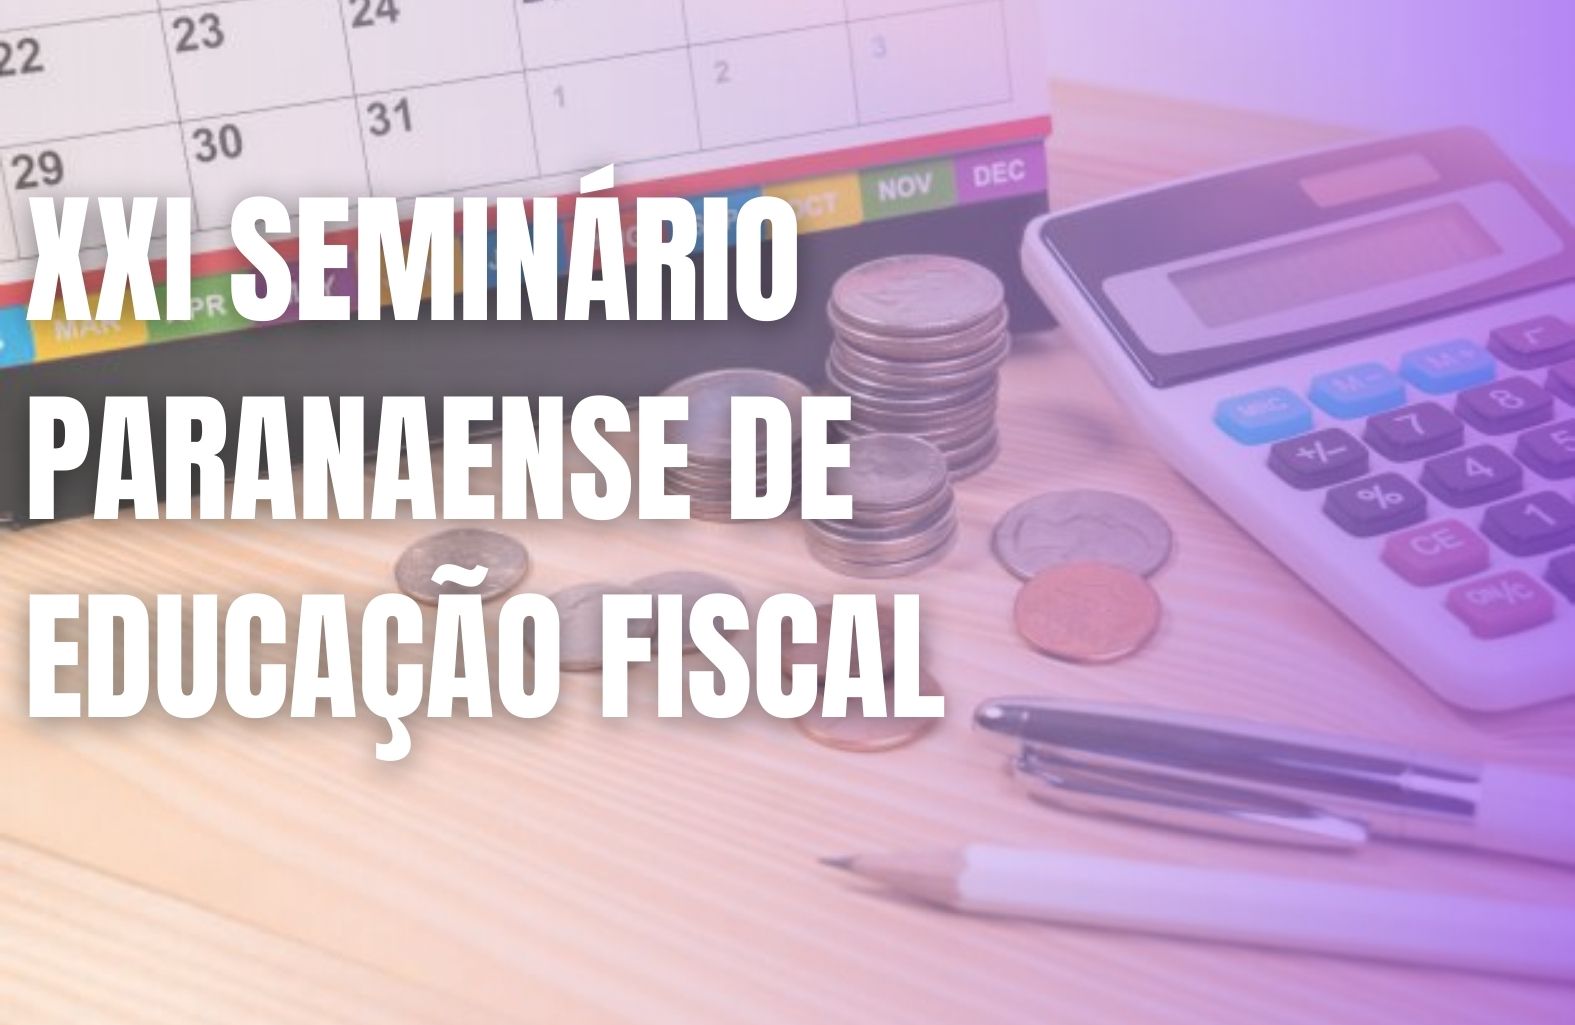 XXI Seminário Paranaense de Educação Fiscal acontece nos dias 2 e 3 de setembro